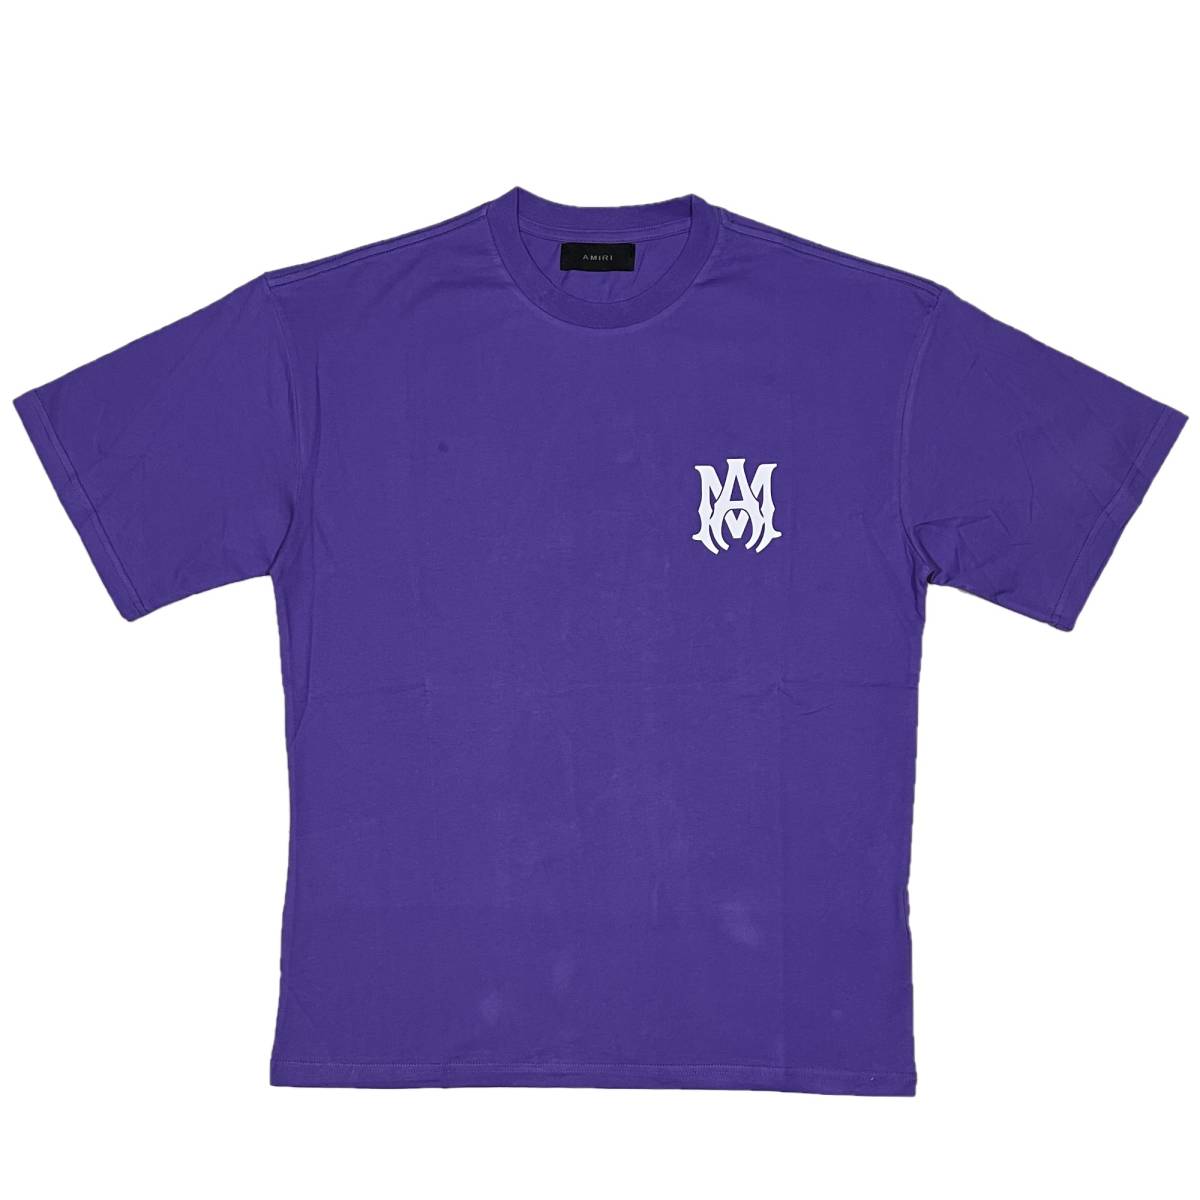 超話題新作 CORE MA アミリ AMIRI [並行輸入品] ロゴ (L) (パープル) Tシャツ 半袖 文字、ロゴ